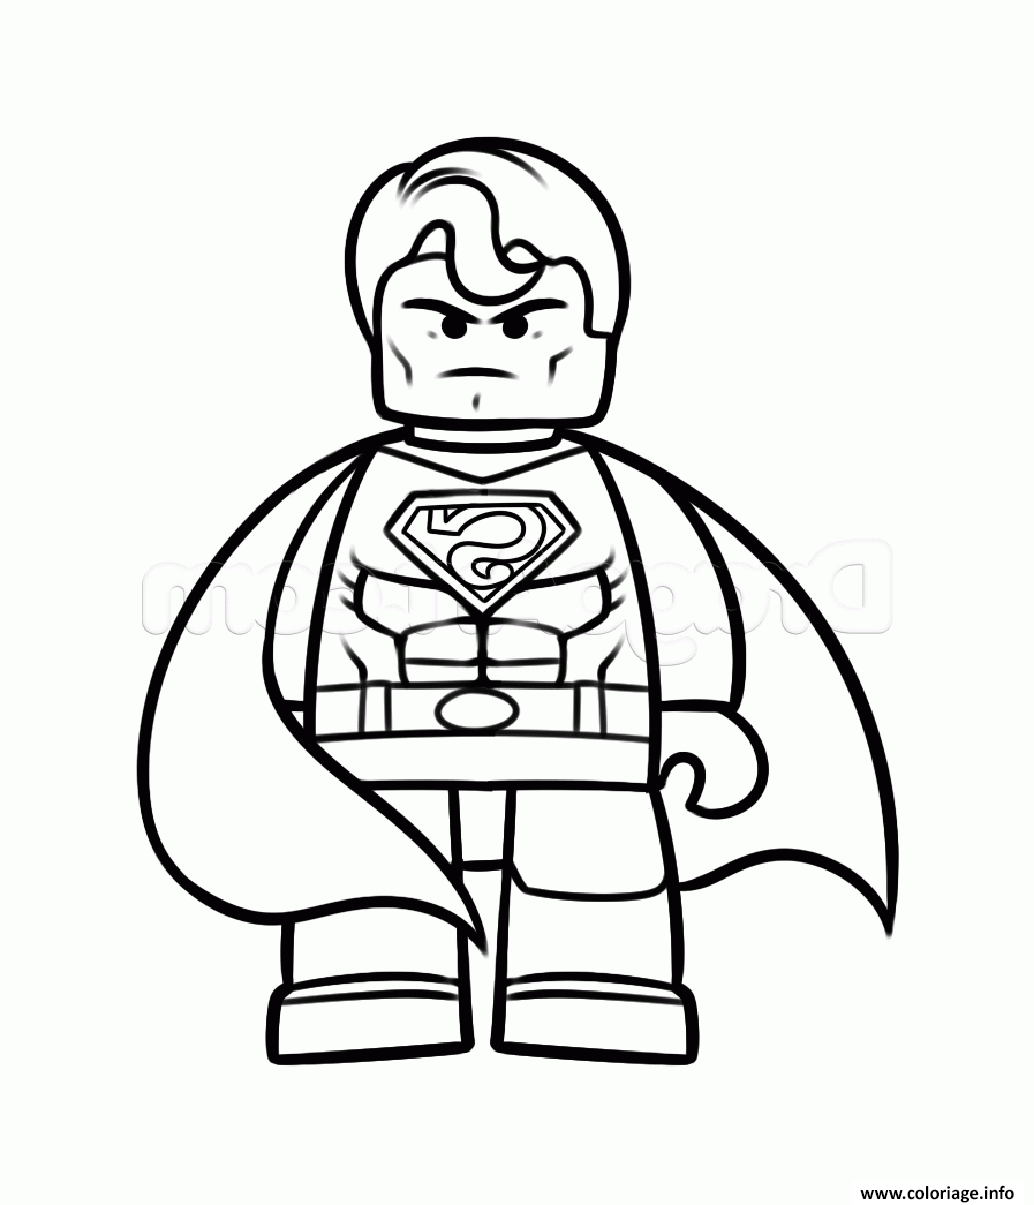 Dessin superman vs batman lego fache Coloriage Gratuit à Imprimer